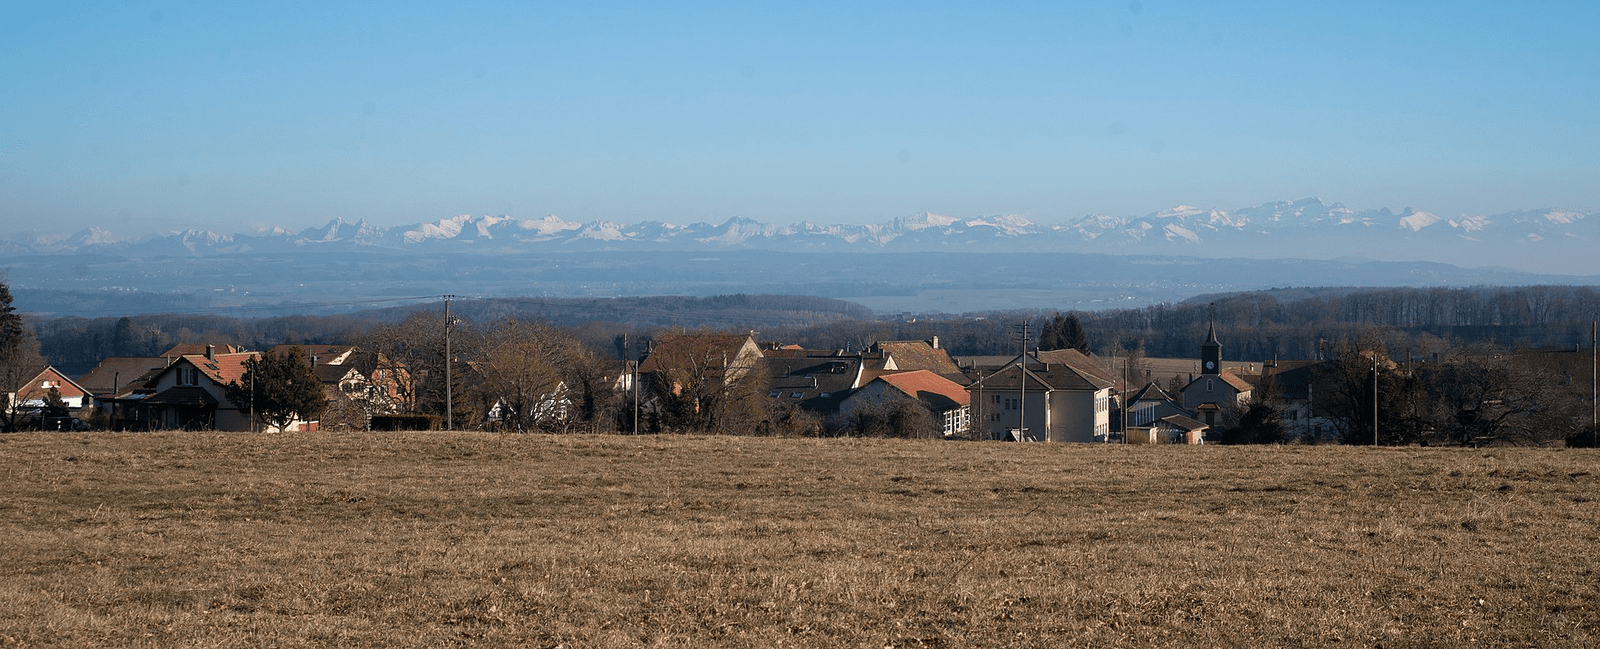 Commune de Moiry, canton de Vaud, Suisse. Les Alpes en arrière plan.